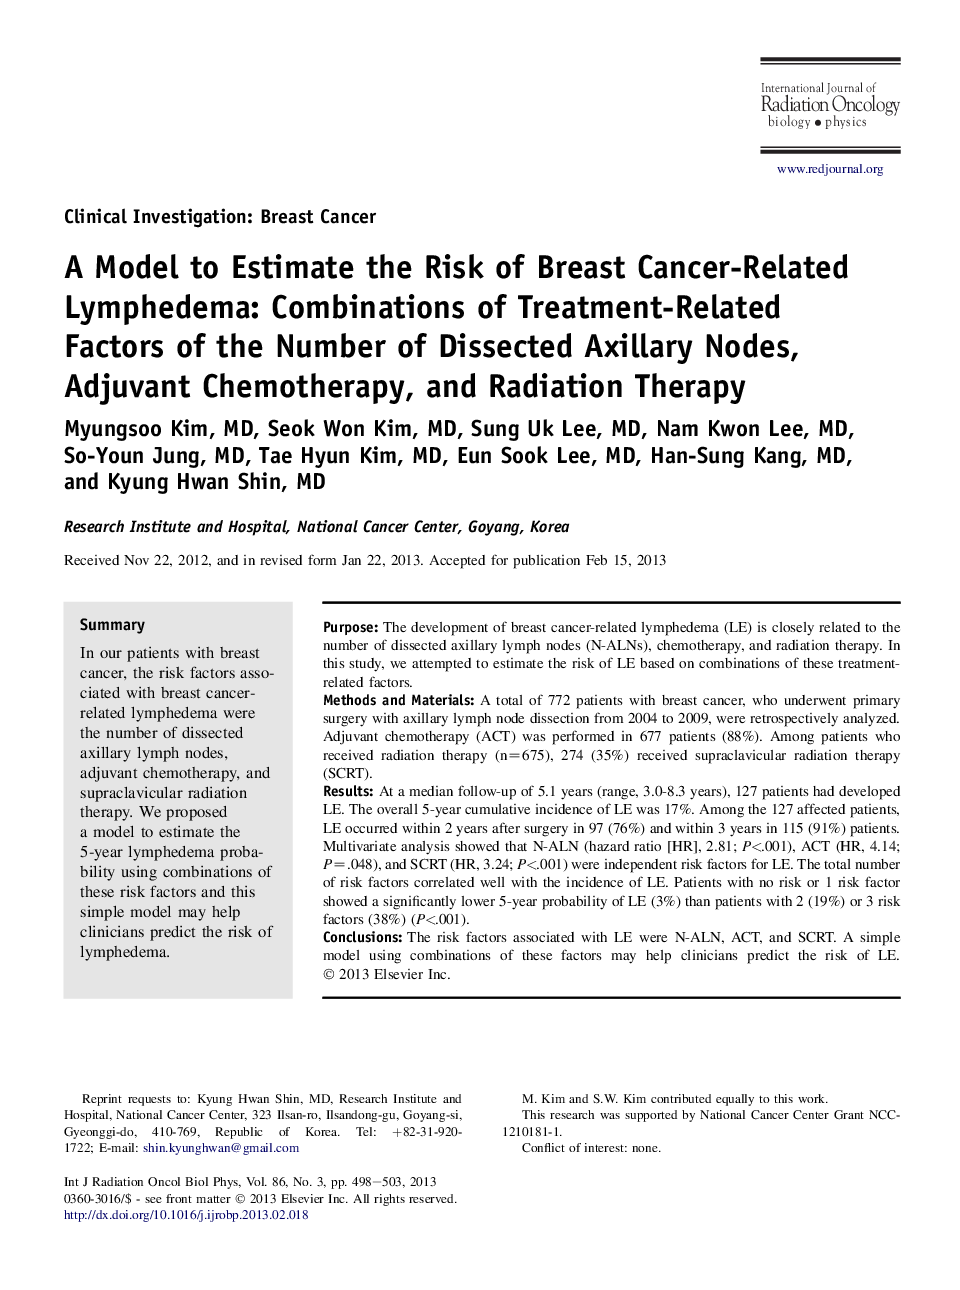 یک مدل برای ارزیابی خطر لنفدوم مرتبط با سرطان پستان: ترکیبی از عوامل مرتبط با درمان تعداد گره های آسیب دیده، شیمی درمانی، جراحی رادیواکتیو 